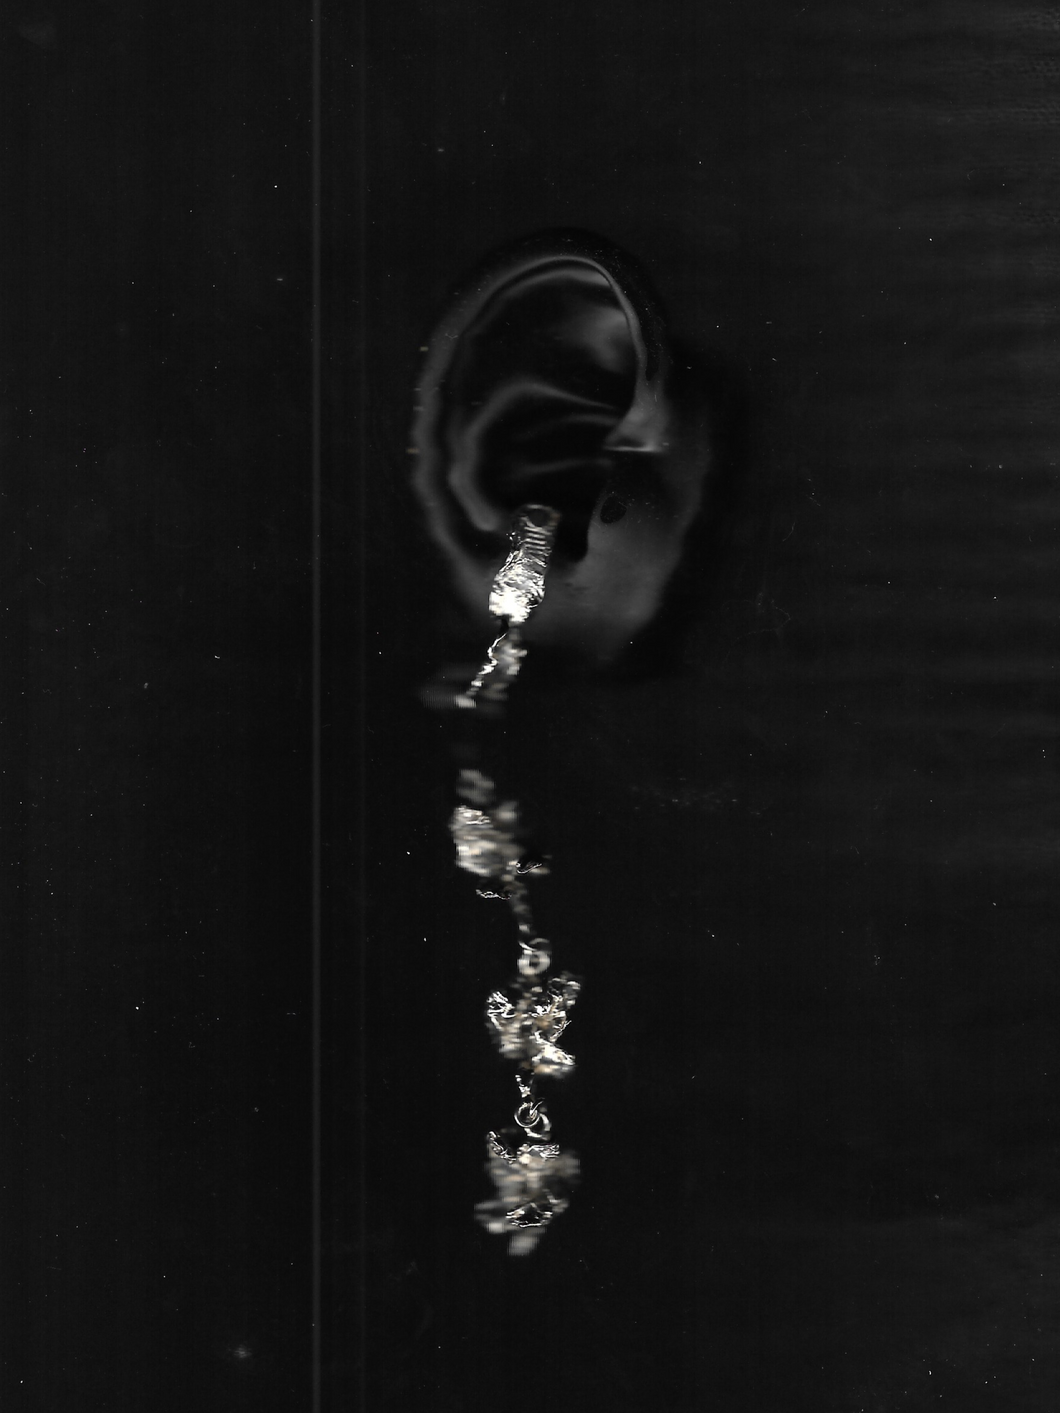 Rintik Earrings